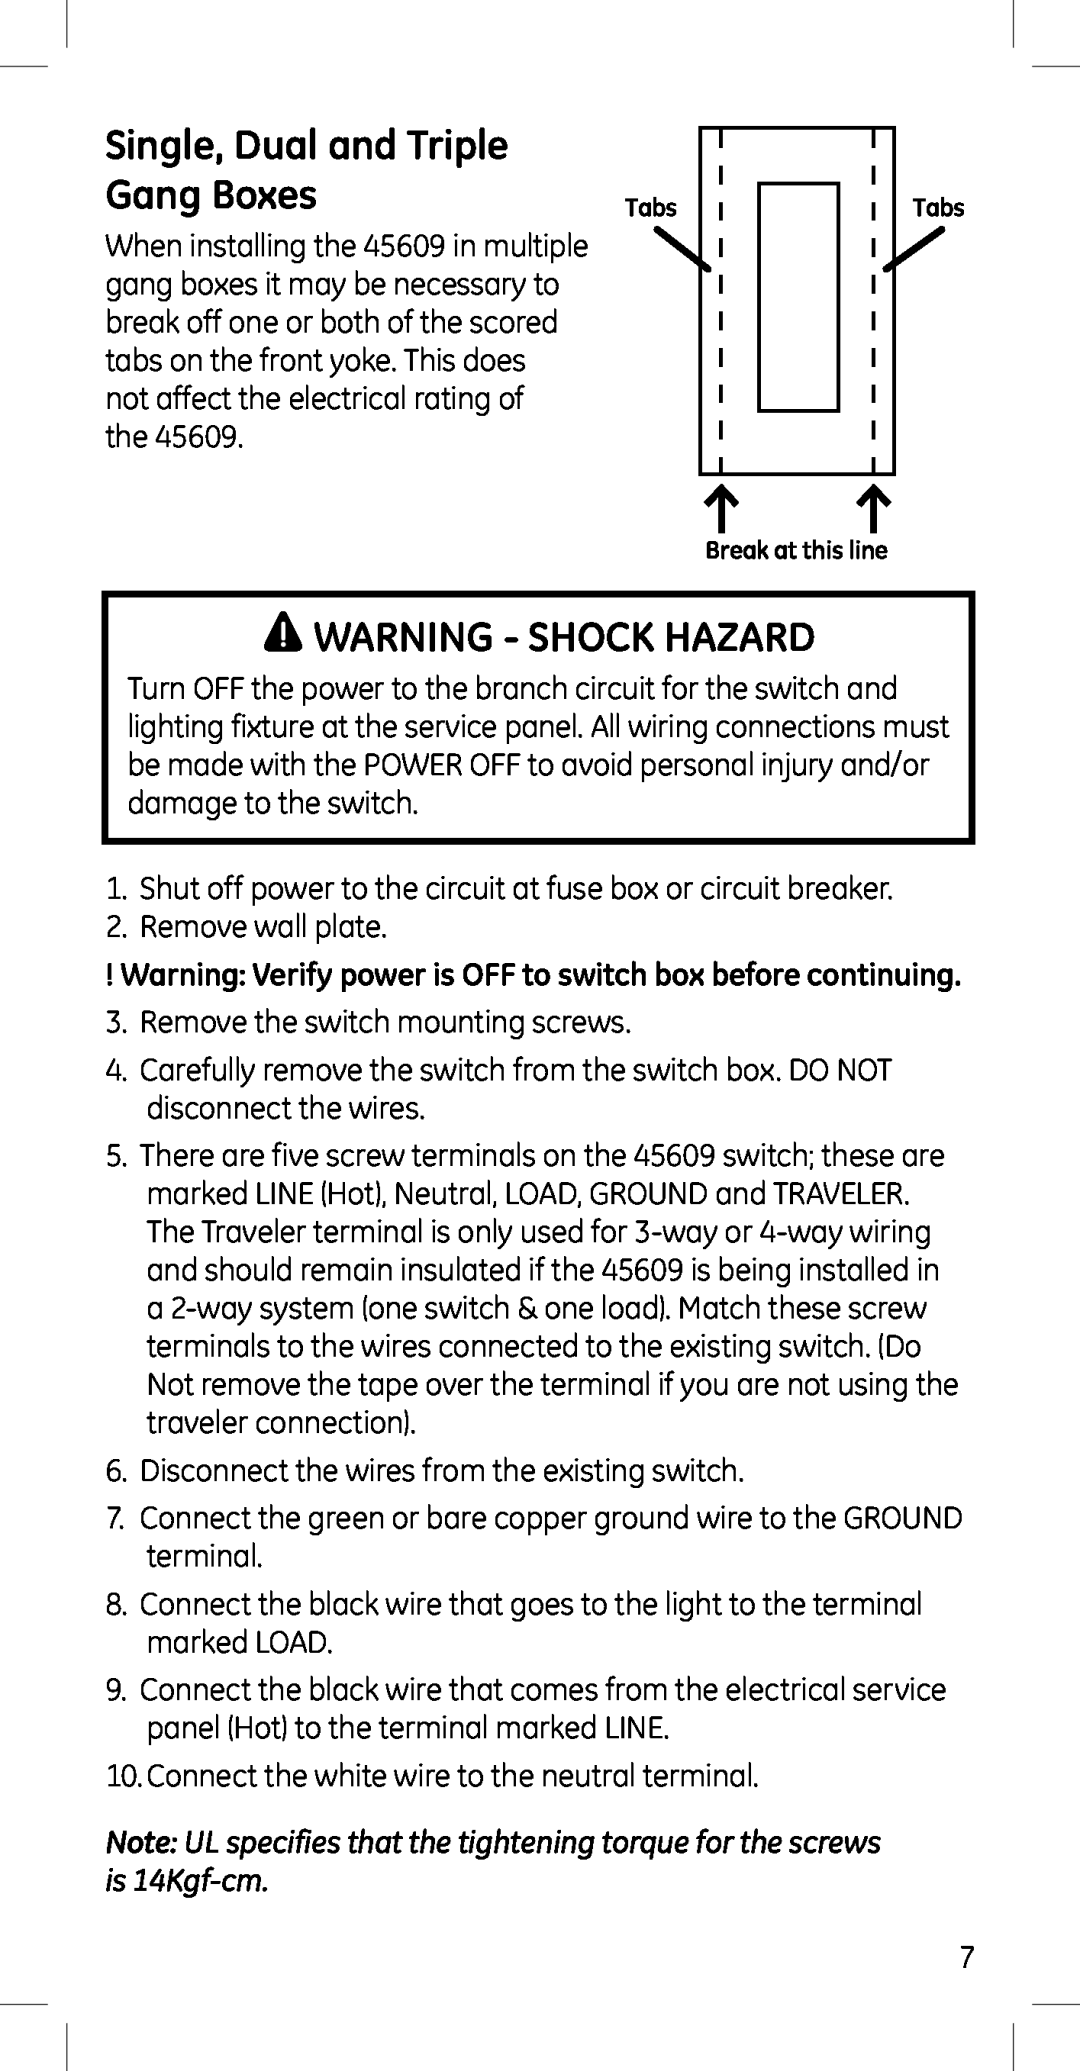 Jasco 45609 manual Single, Dual and Triple, Gang Boxes, Warning - Shock Hazard 